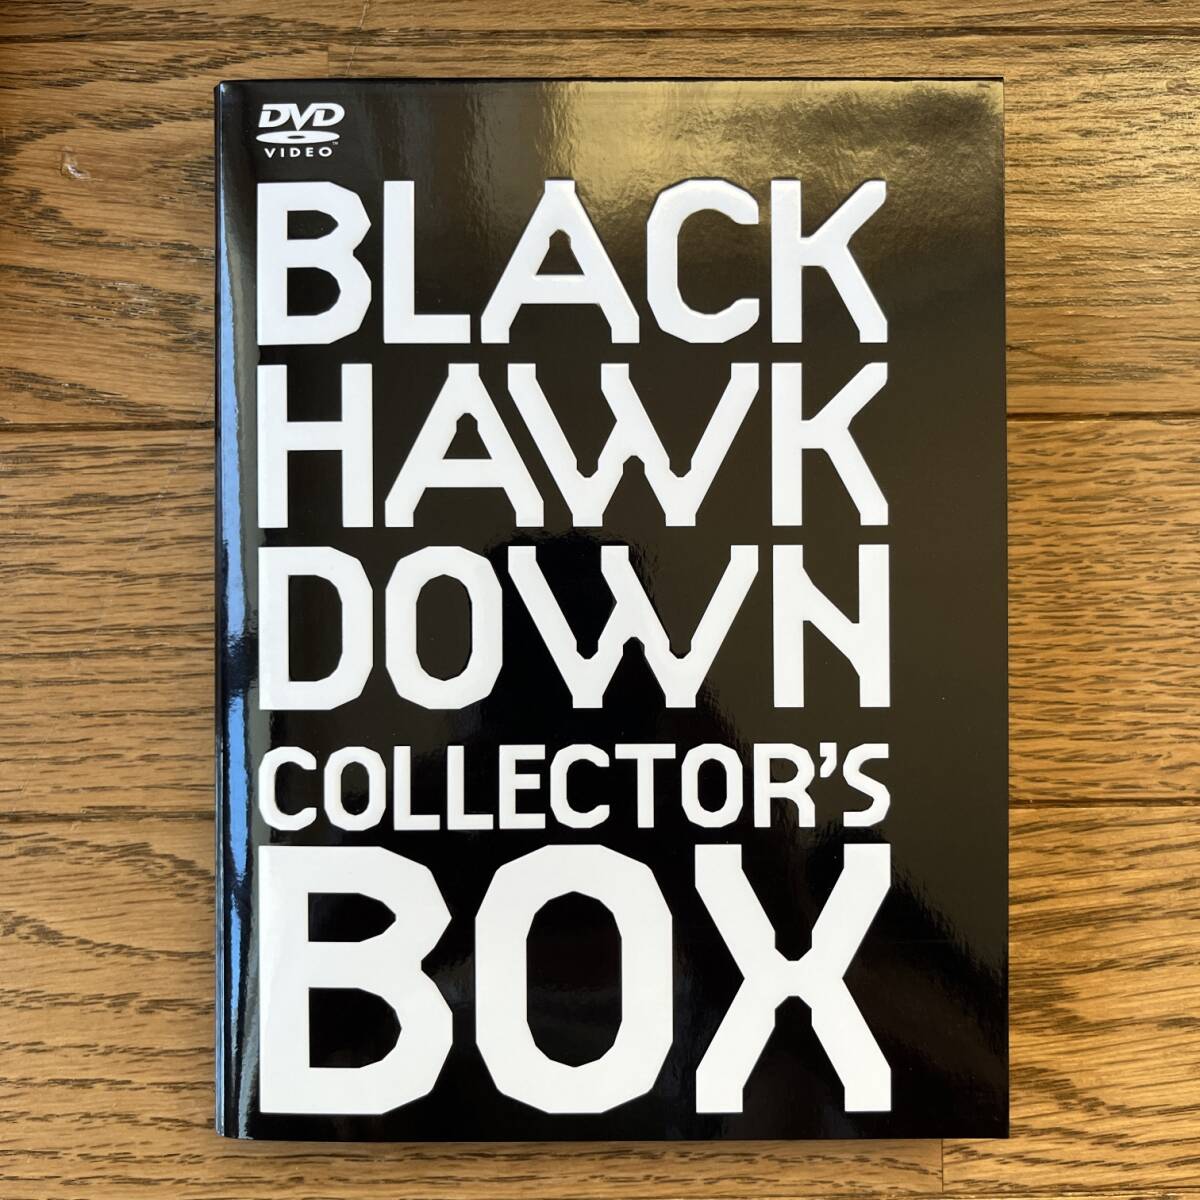 3DVD ブラックホーク ダウン コレクターズ・ボックス PCBP 50827の画像3